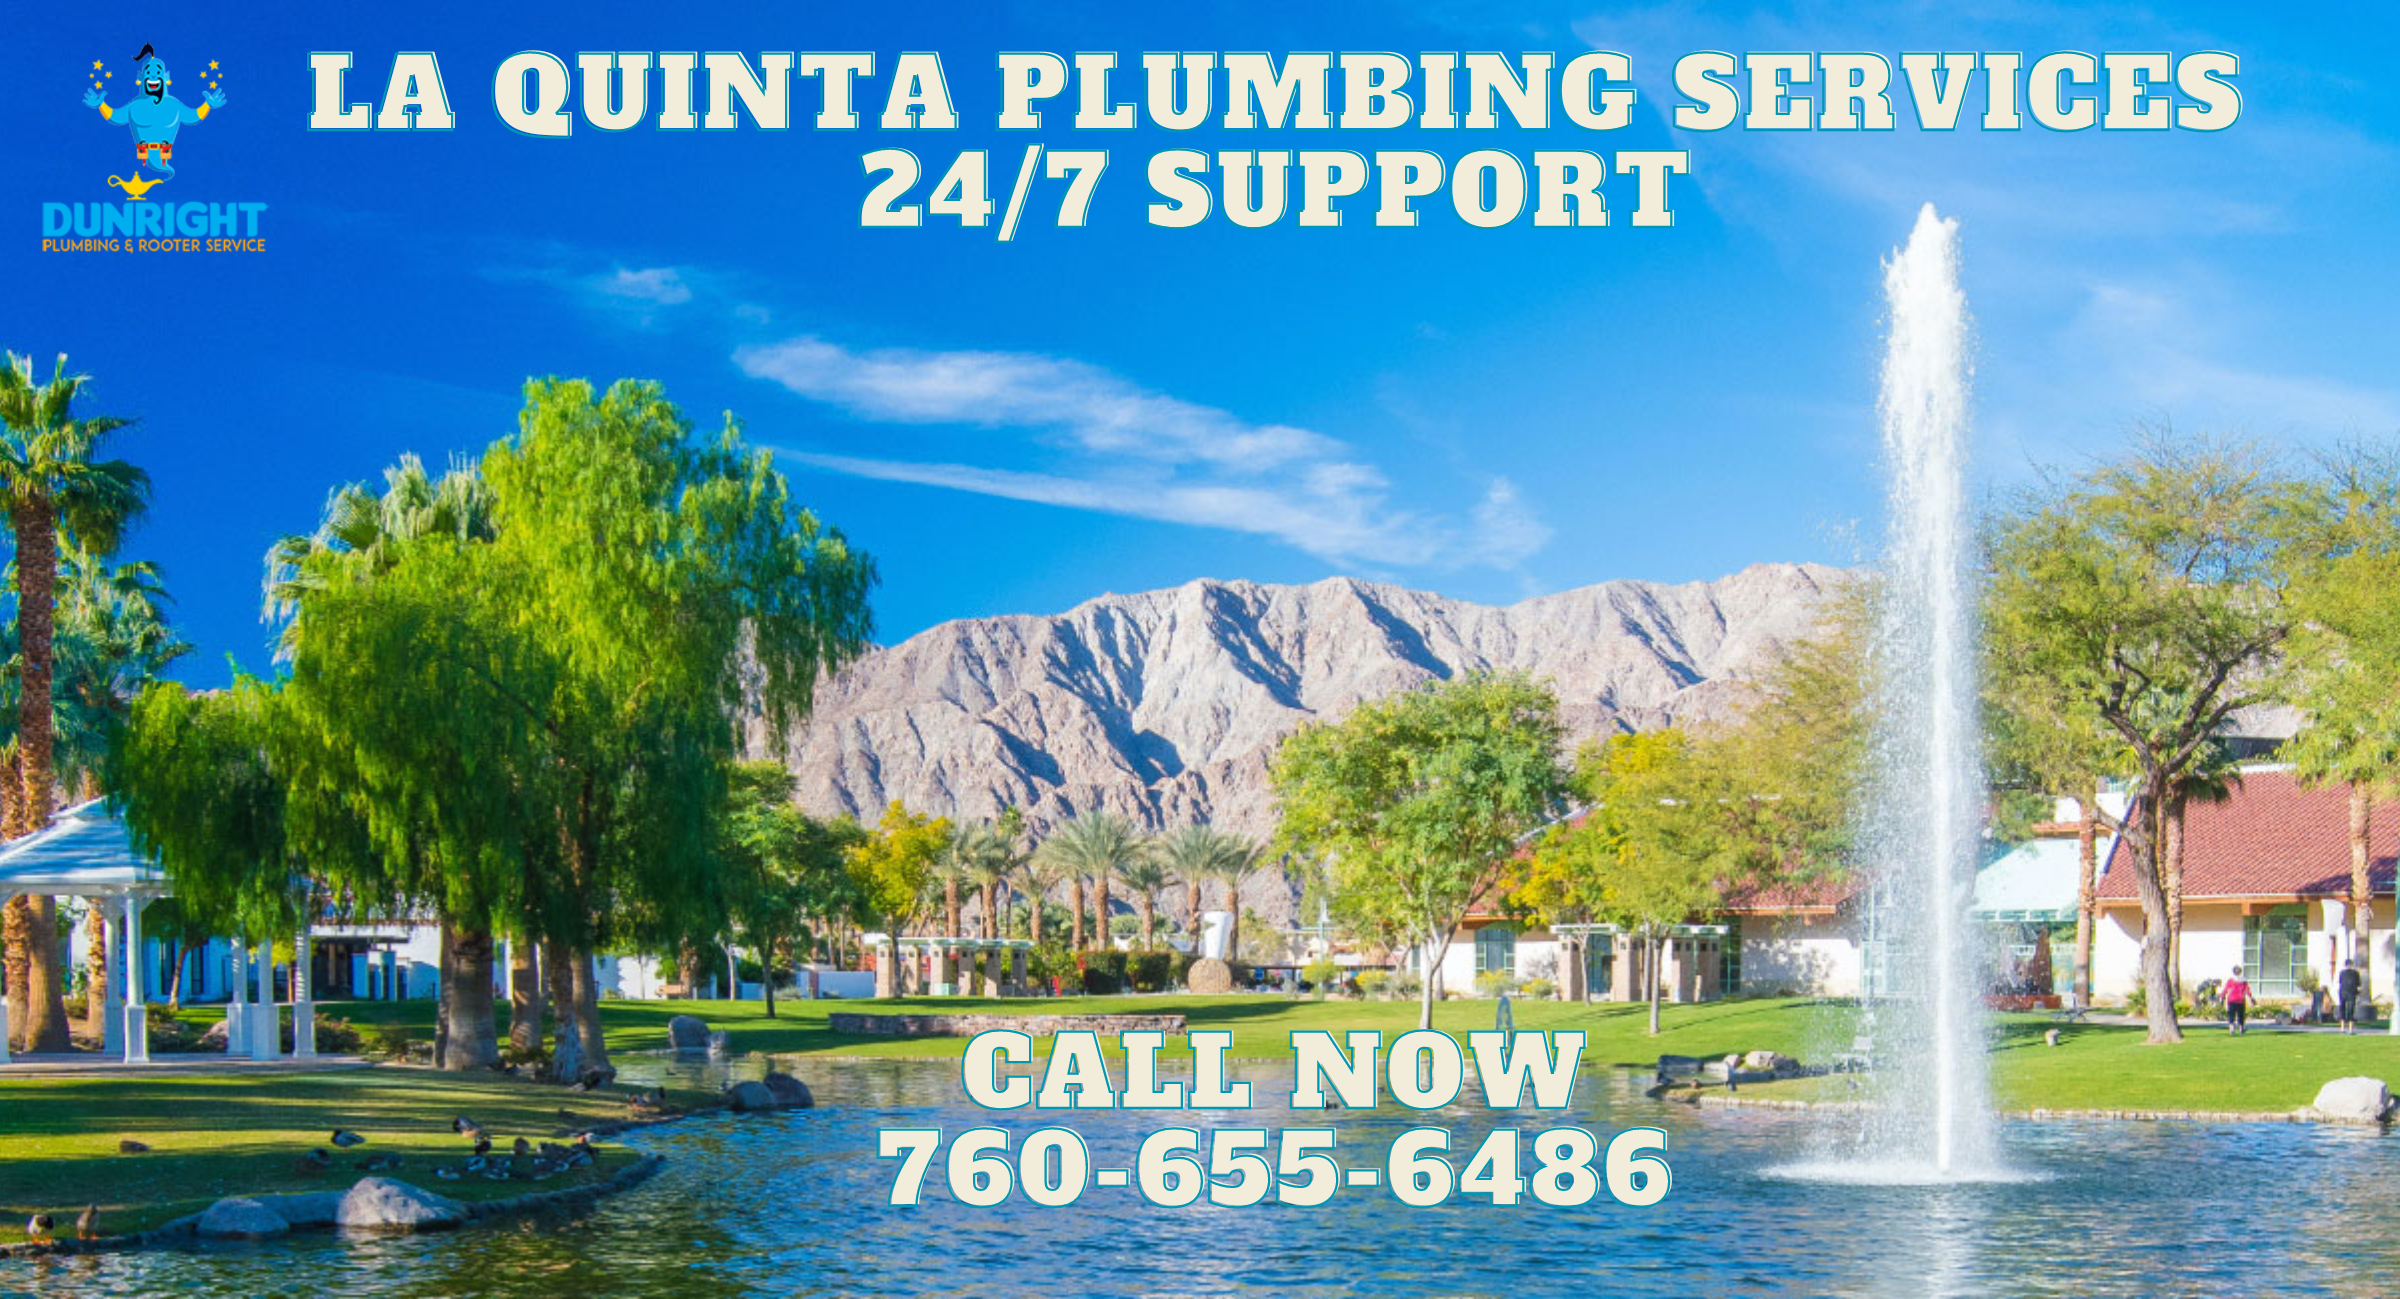 La qunita plumbing services